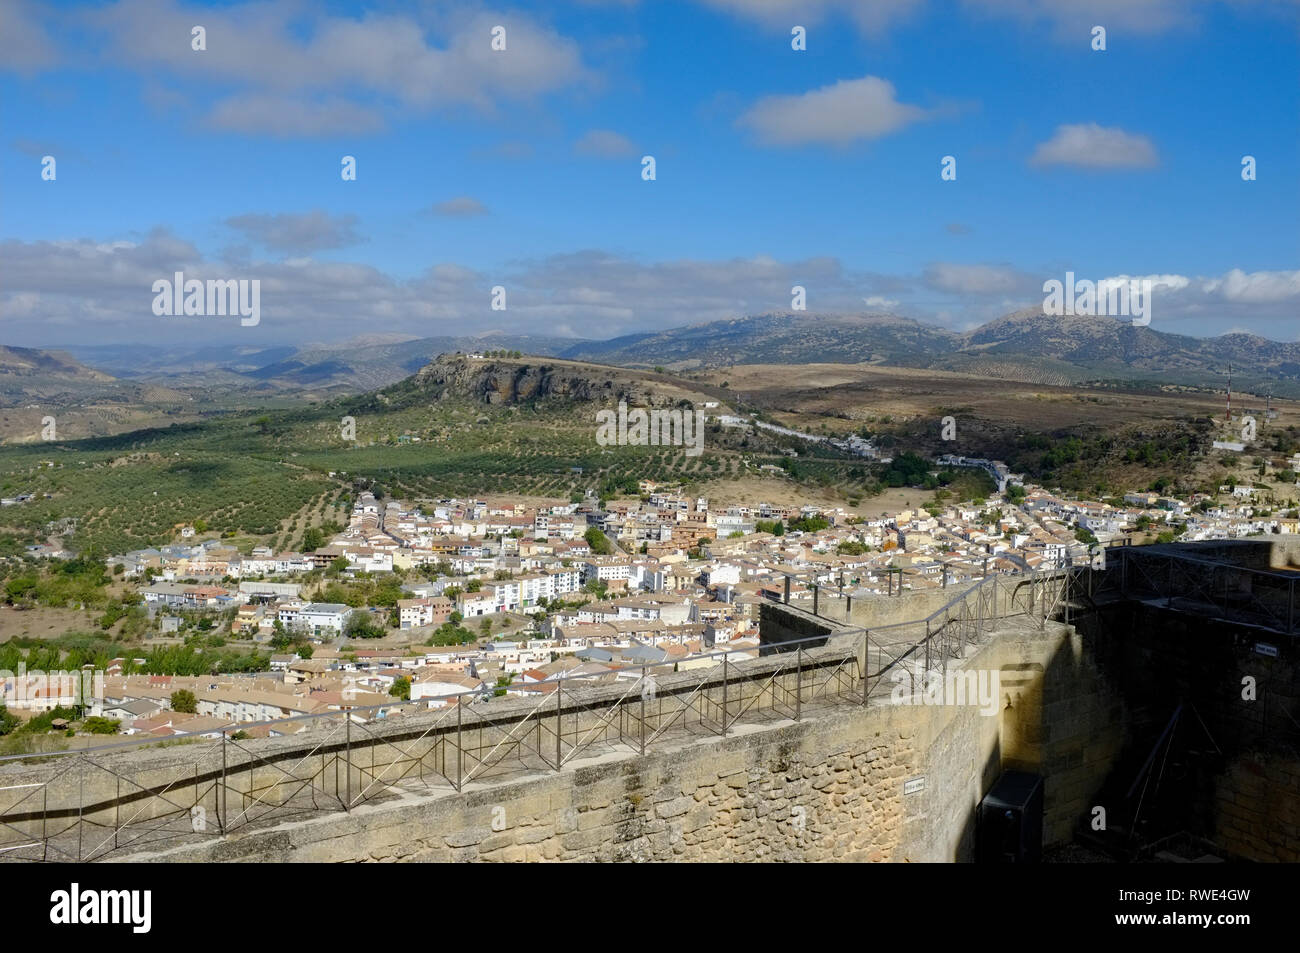 Vista di Alcala la Real Città e paesaggio circostante dalle pareti della collina, storico castello/fortezza. Provincia di Jaen, Andalusia, Spagna Foto Stock